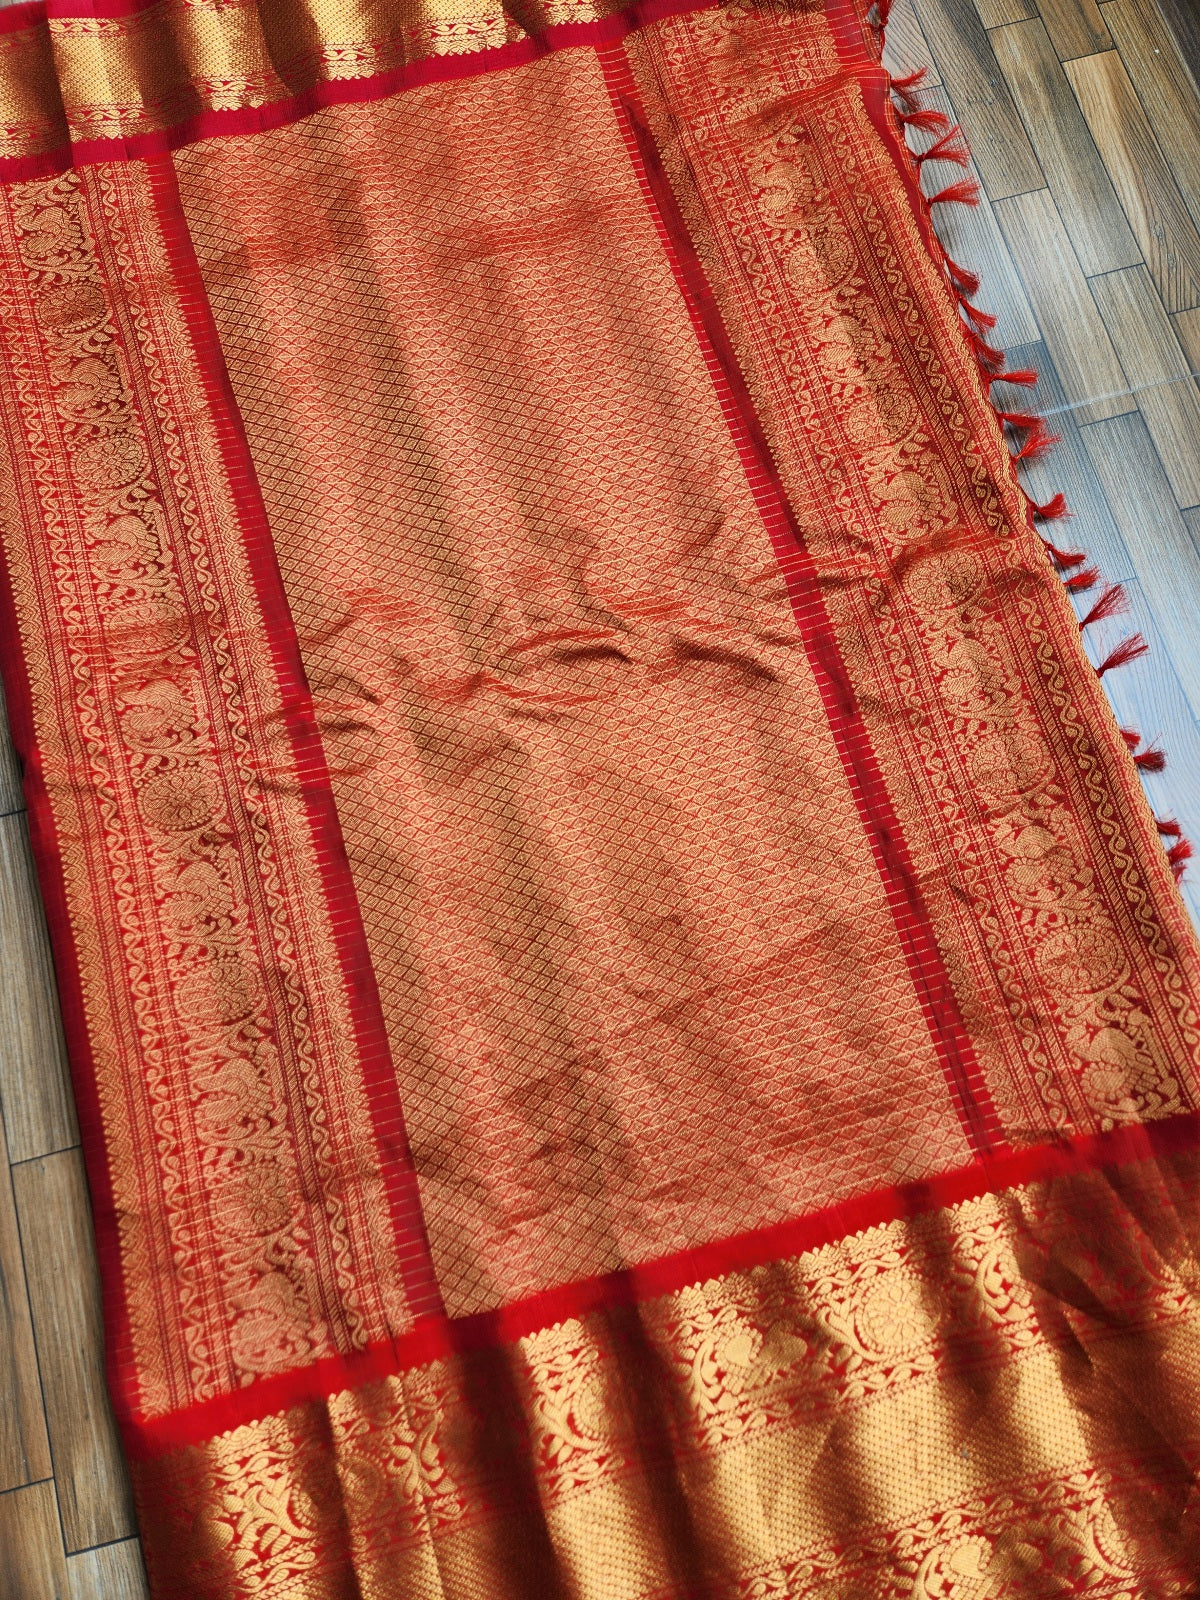 gadwal saree handloom saree red saree wedding shopping pattu saree silk